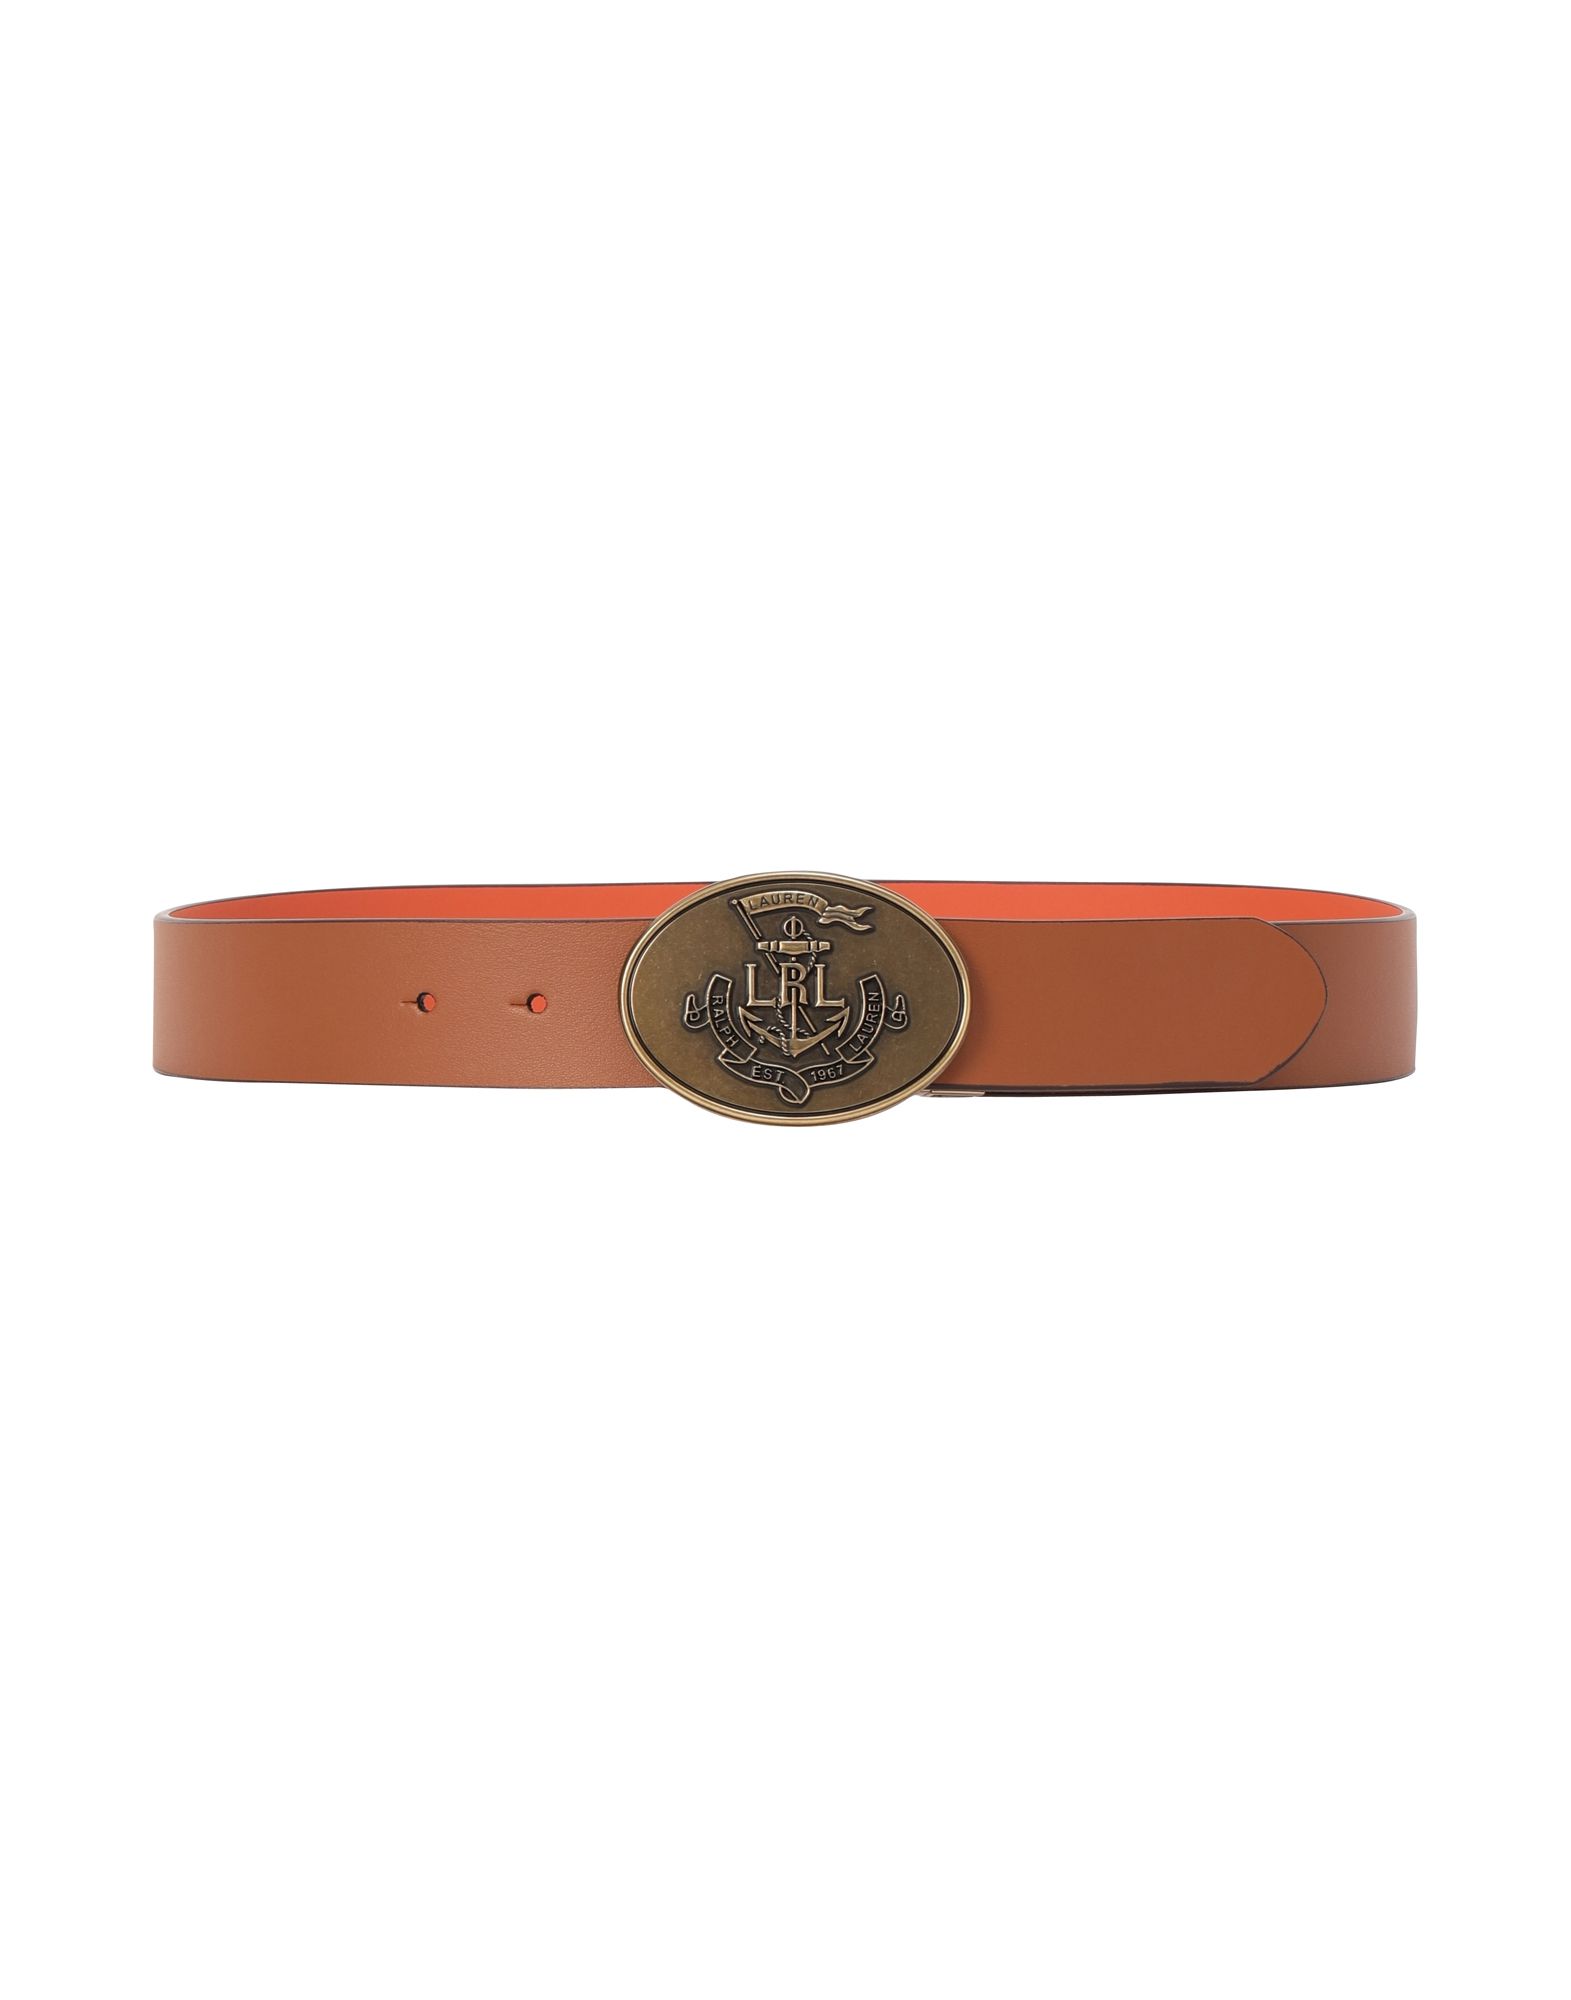 《送料無料》LAUREN RALPH LAUREN レディース ベルト オレンジ XS 牛革 100% Anchor Reversible Leather Belt